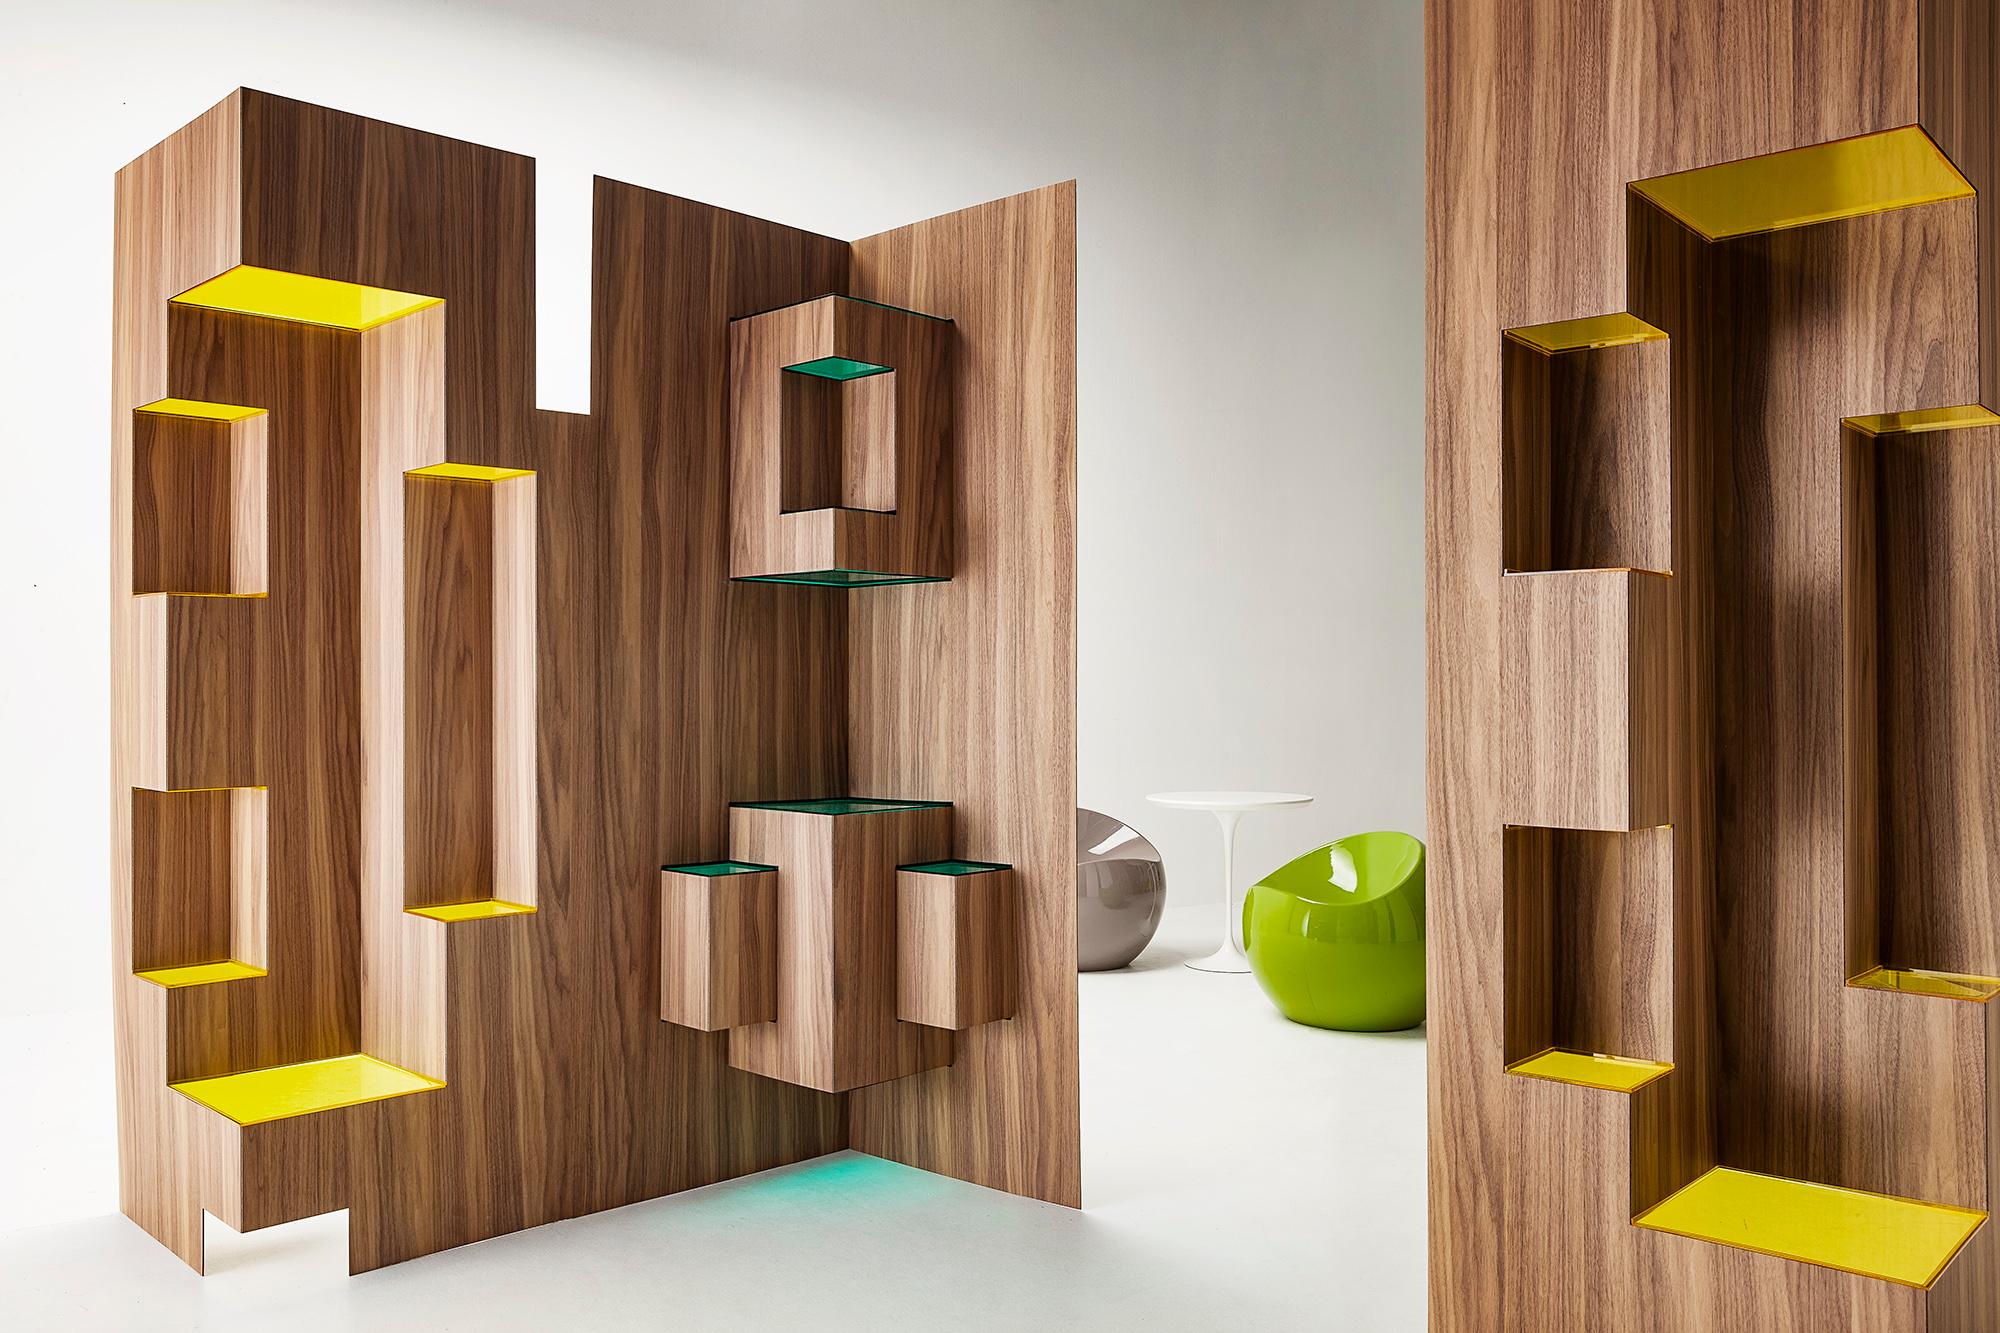 Woodwork Modern Sculptural Wood Room Divider 